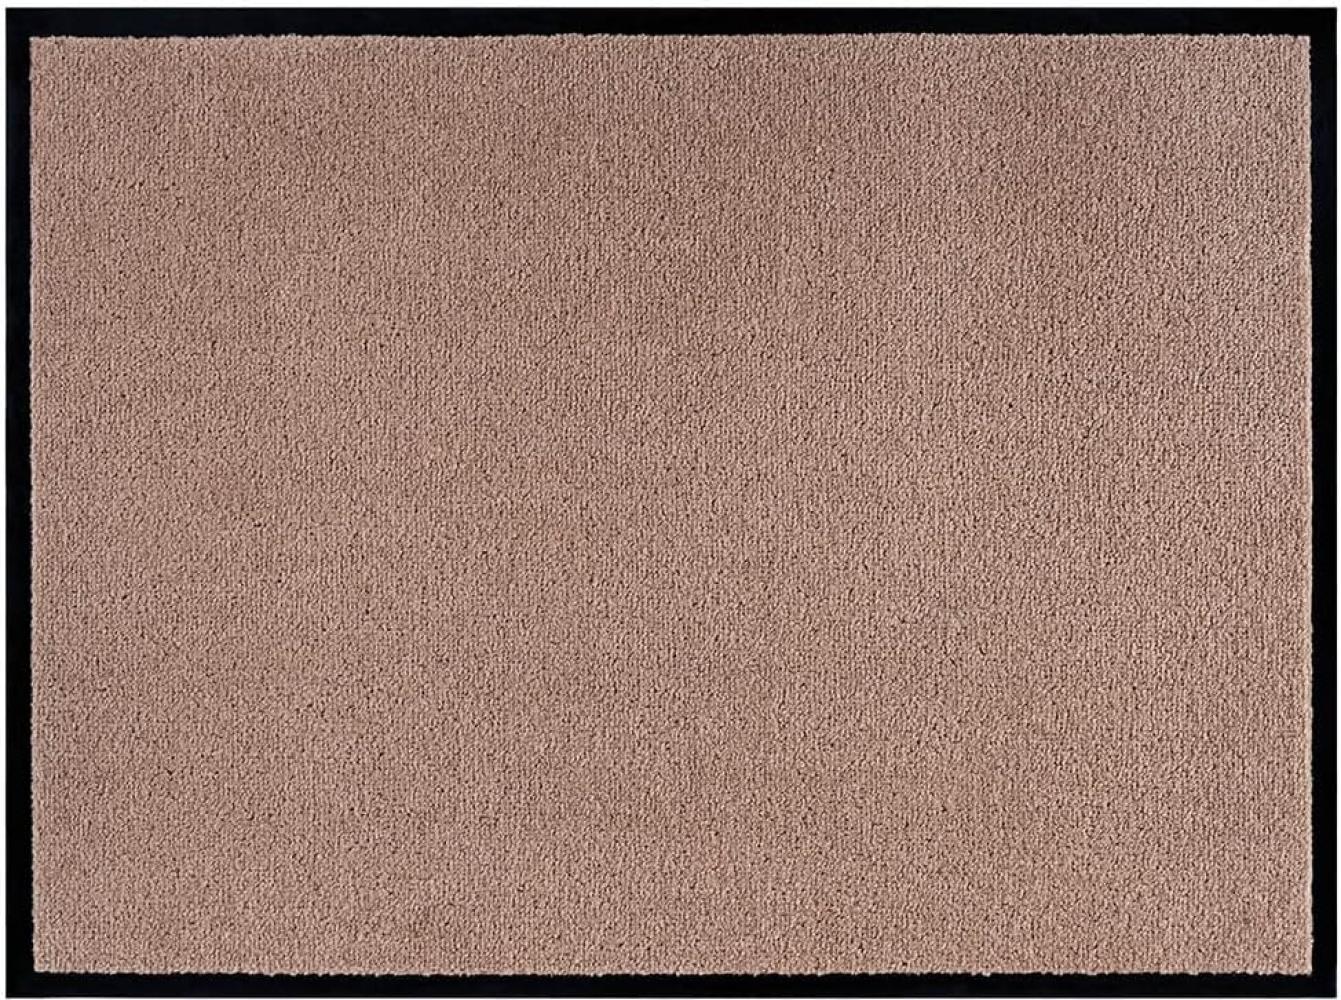 Teppich Boss waschbare In- & Outdoor Fußmatte Uni einfarbig - beige - 60x80x0,7cm Bild 1